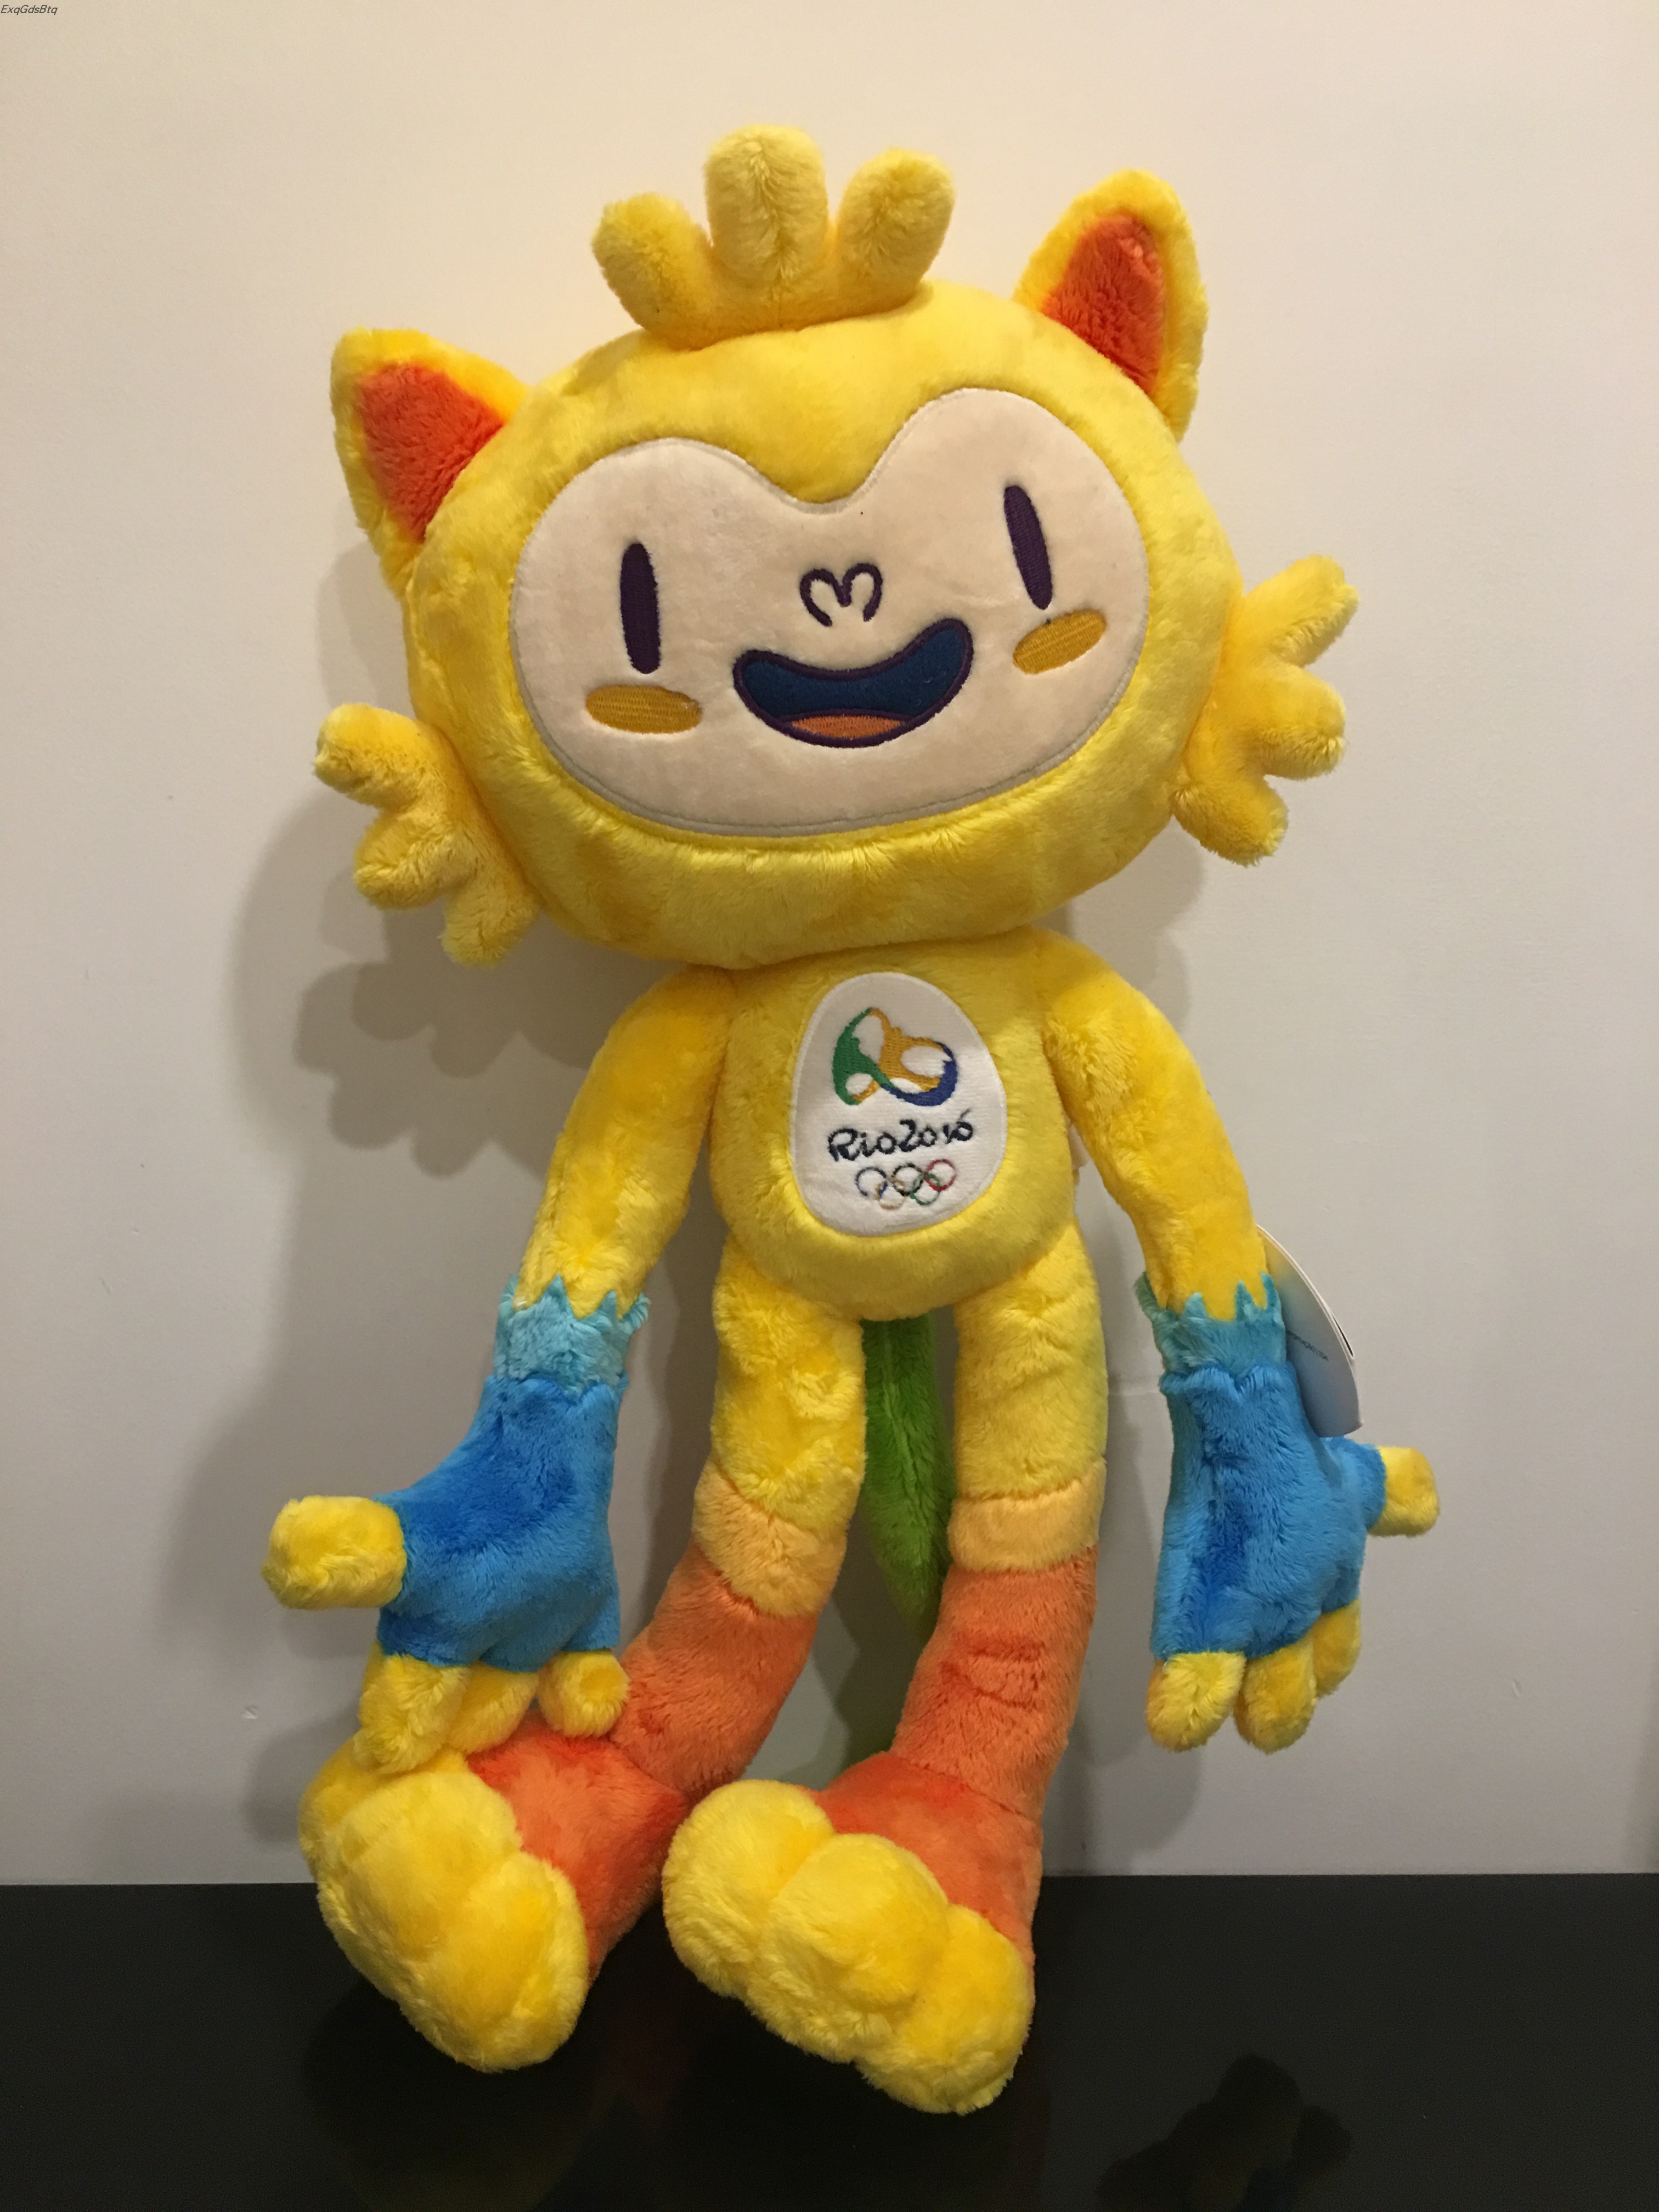 原版2016年里约奥运会吉祥物毛绒玩具公仔维尼休斯50cm中国女排